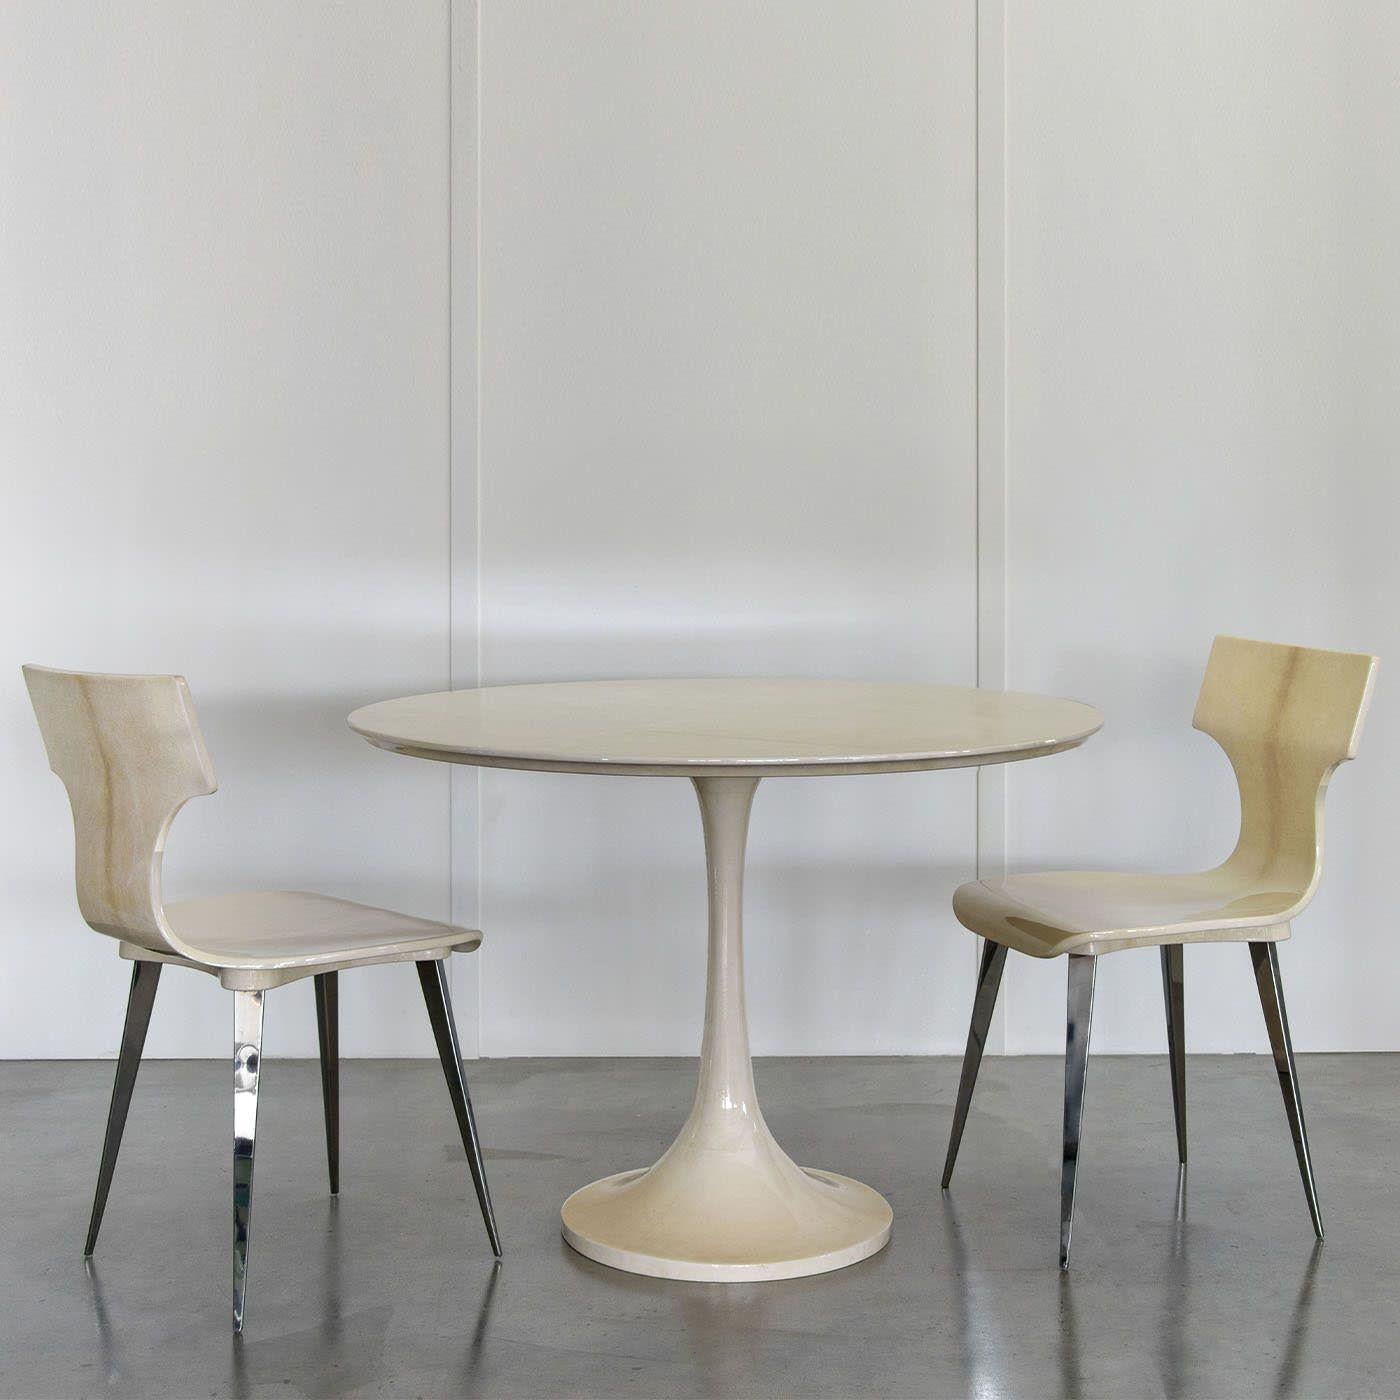 Faisant écho au design harmonieux et épuré du guéridon de Saarinen, ce modèle réécrit sa simplicité grâce à un superbe habillage complet en parchemin naturel. Une superbe finition brillante scelle la pièce, la rendant imperméable et mettant en